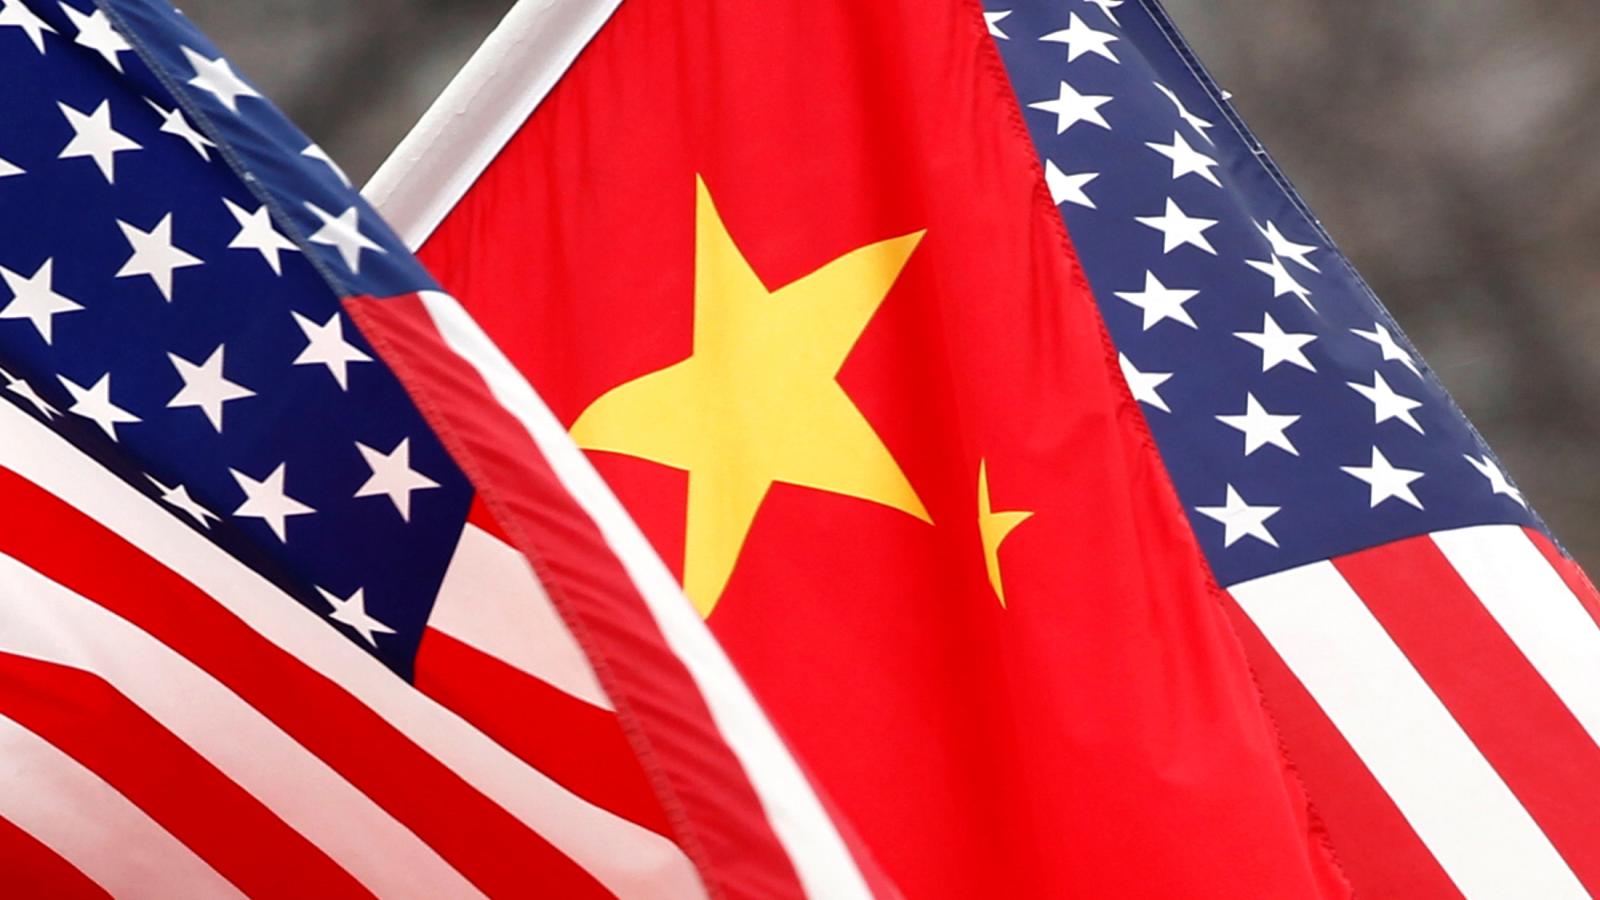 Ο πρόεδρος Μπάιντεν θα προσεγγίσει με "υπομονή" τις σχέσεις της Ουάσινγκτον με το Πεκίνο